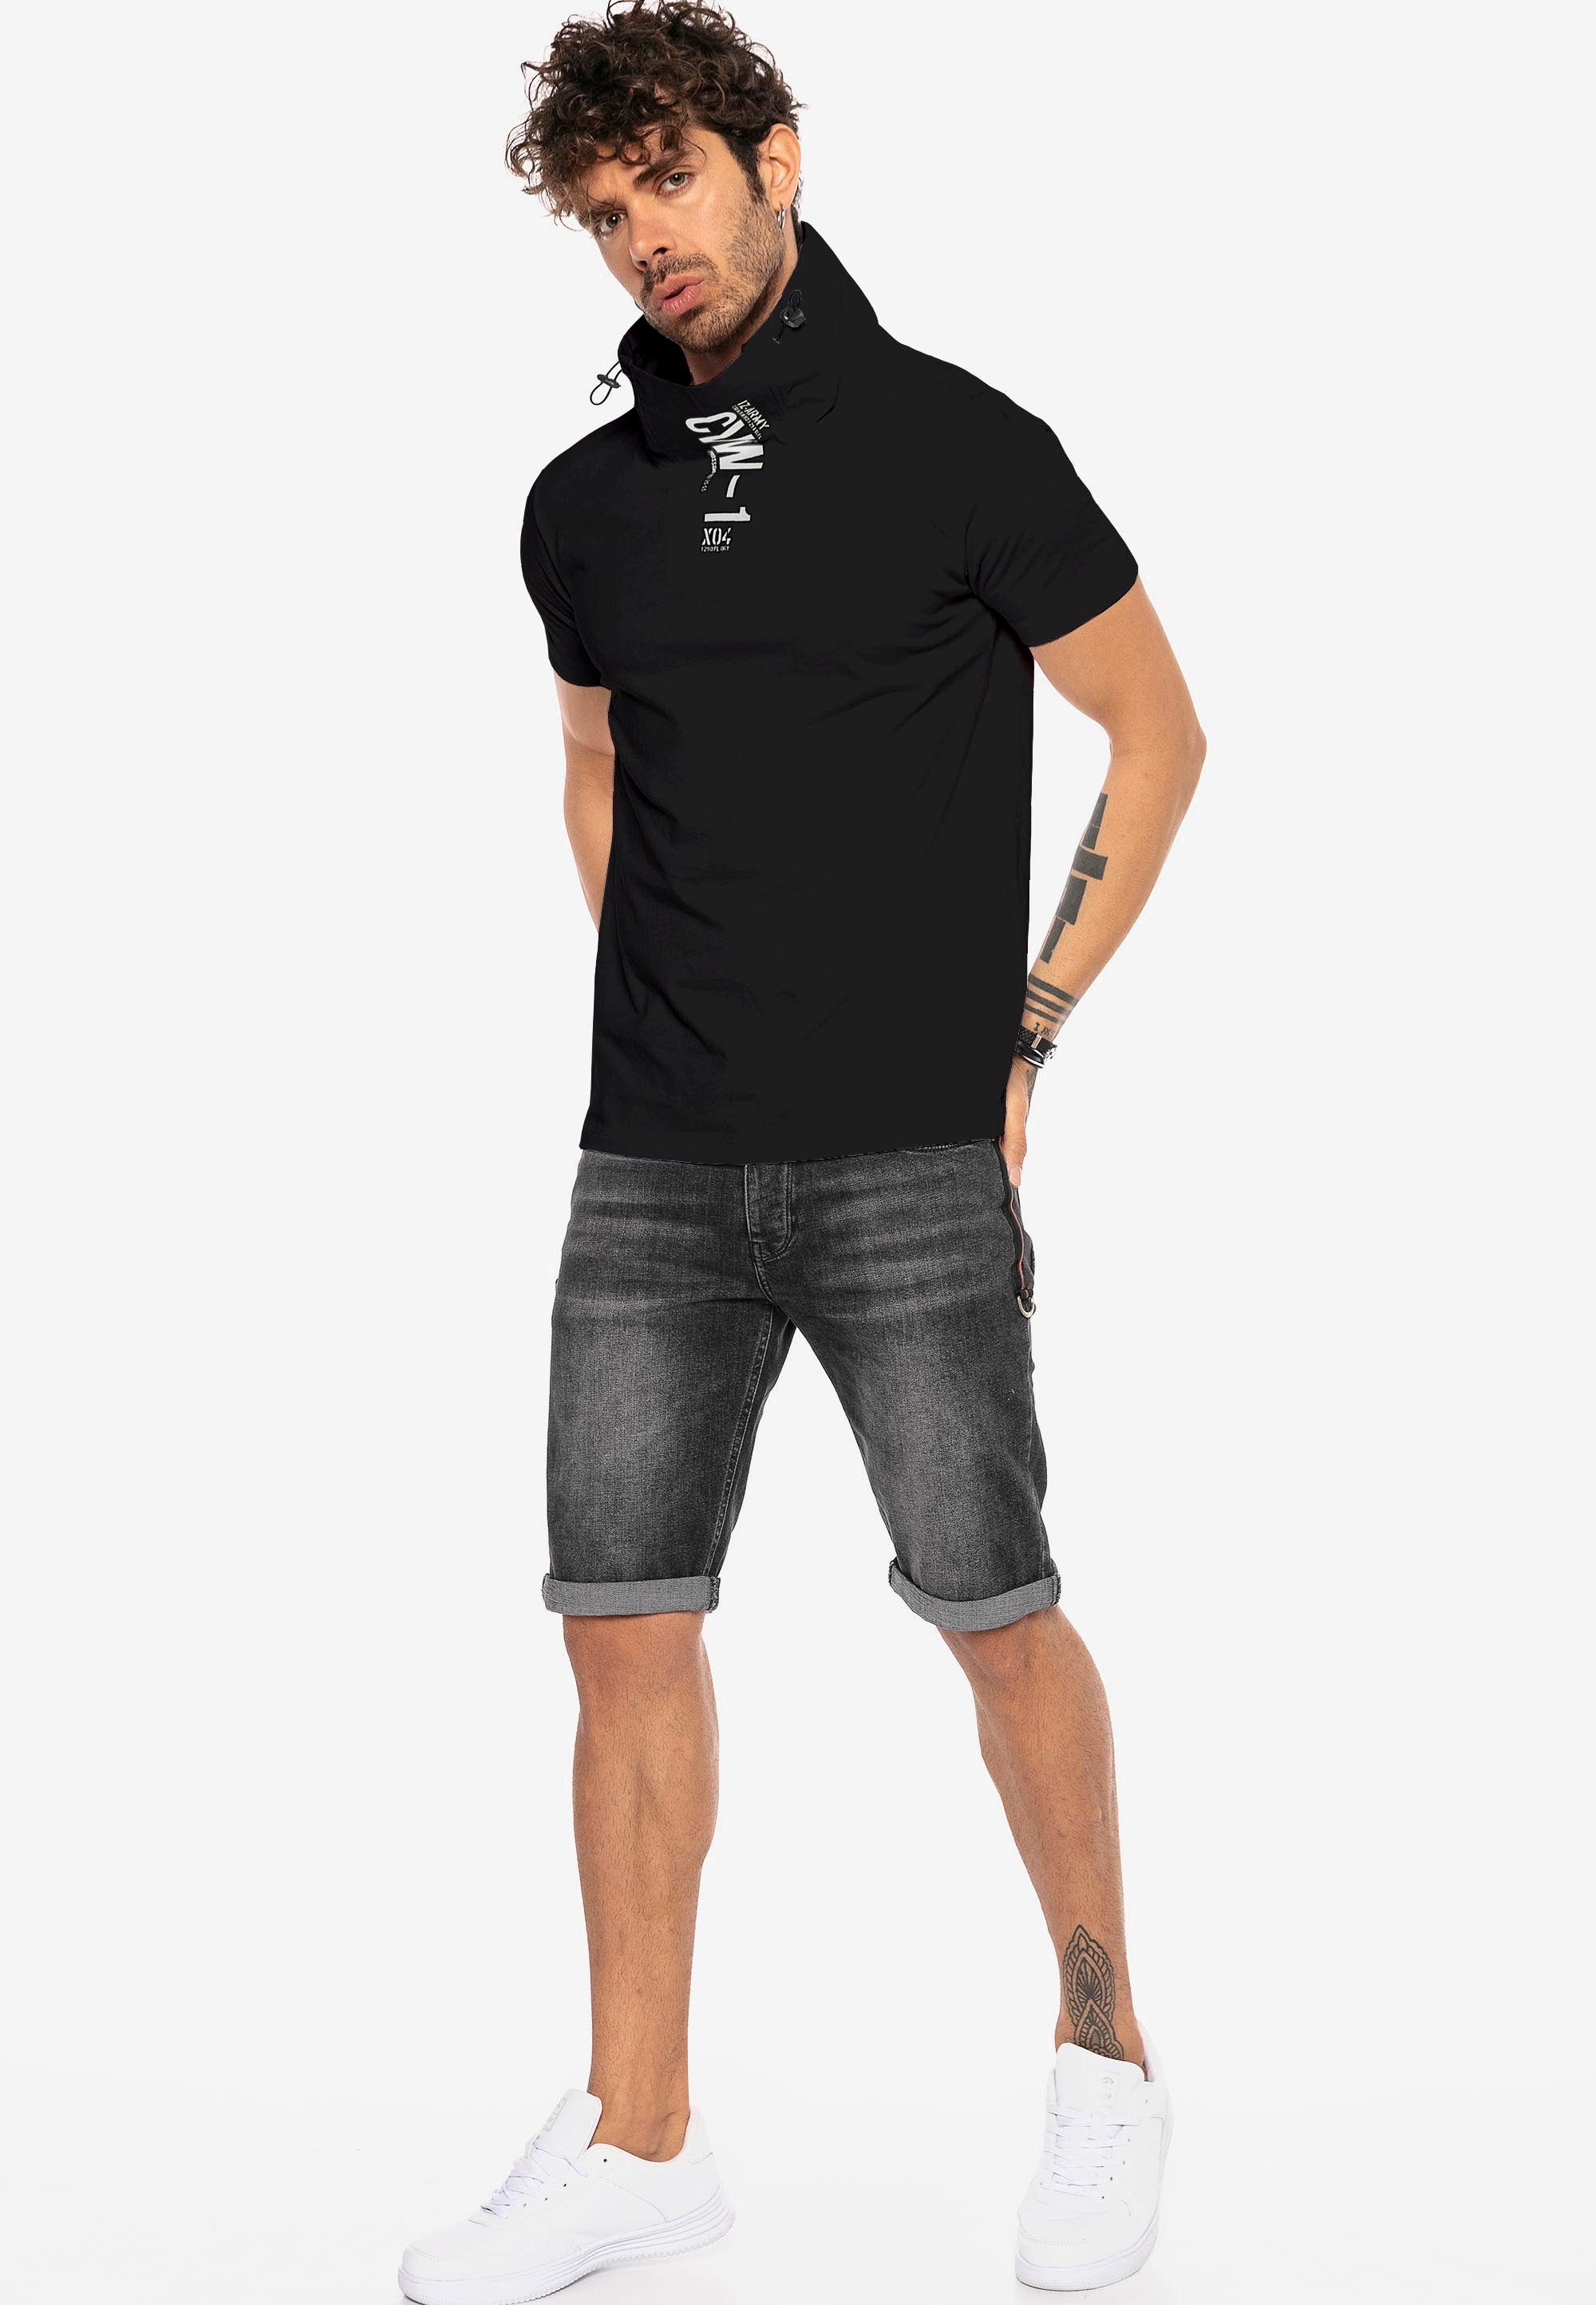 RedBridge T-Shirt Sunnyvale mit hohem schwarz Kragen